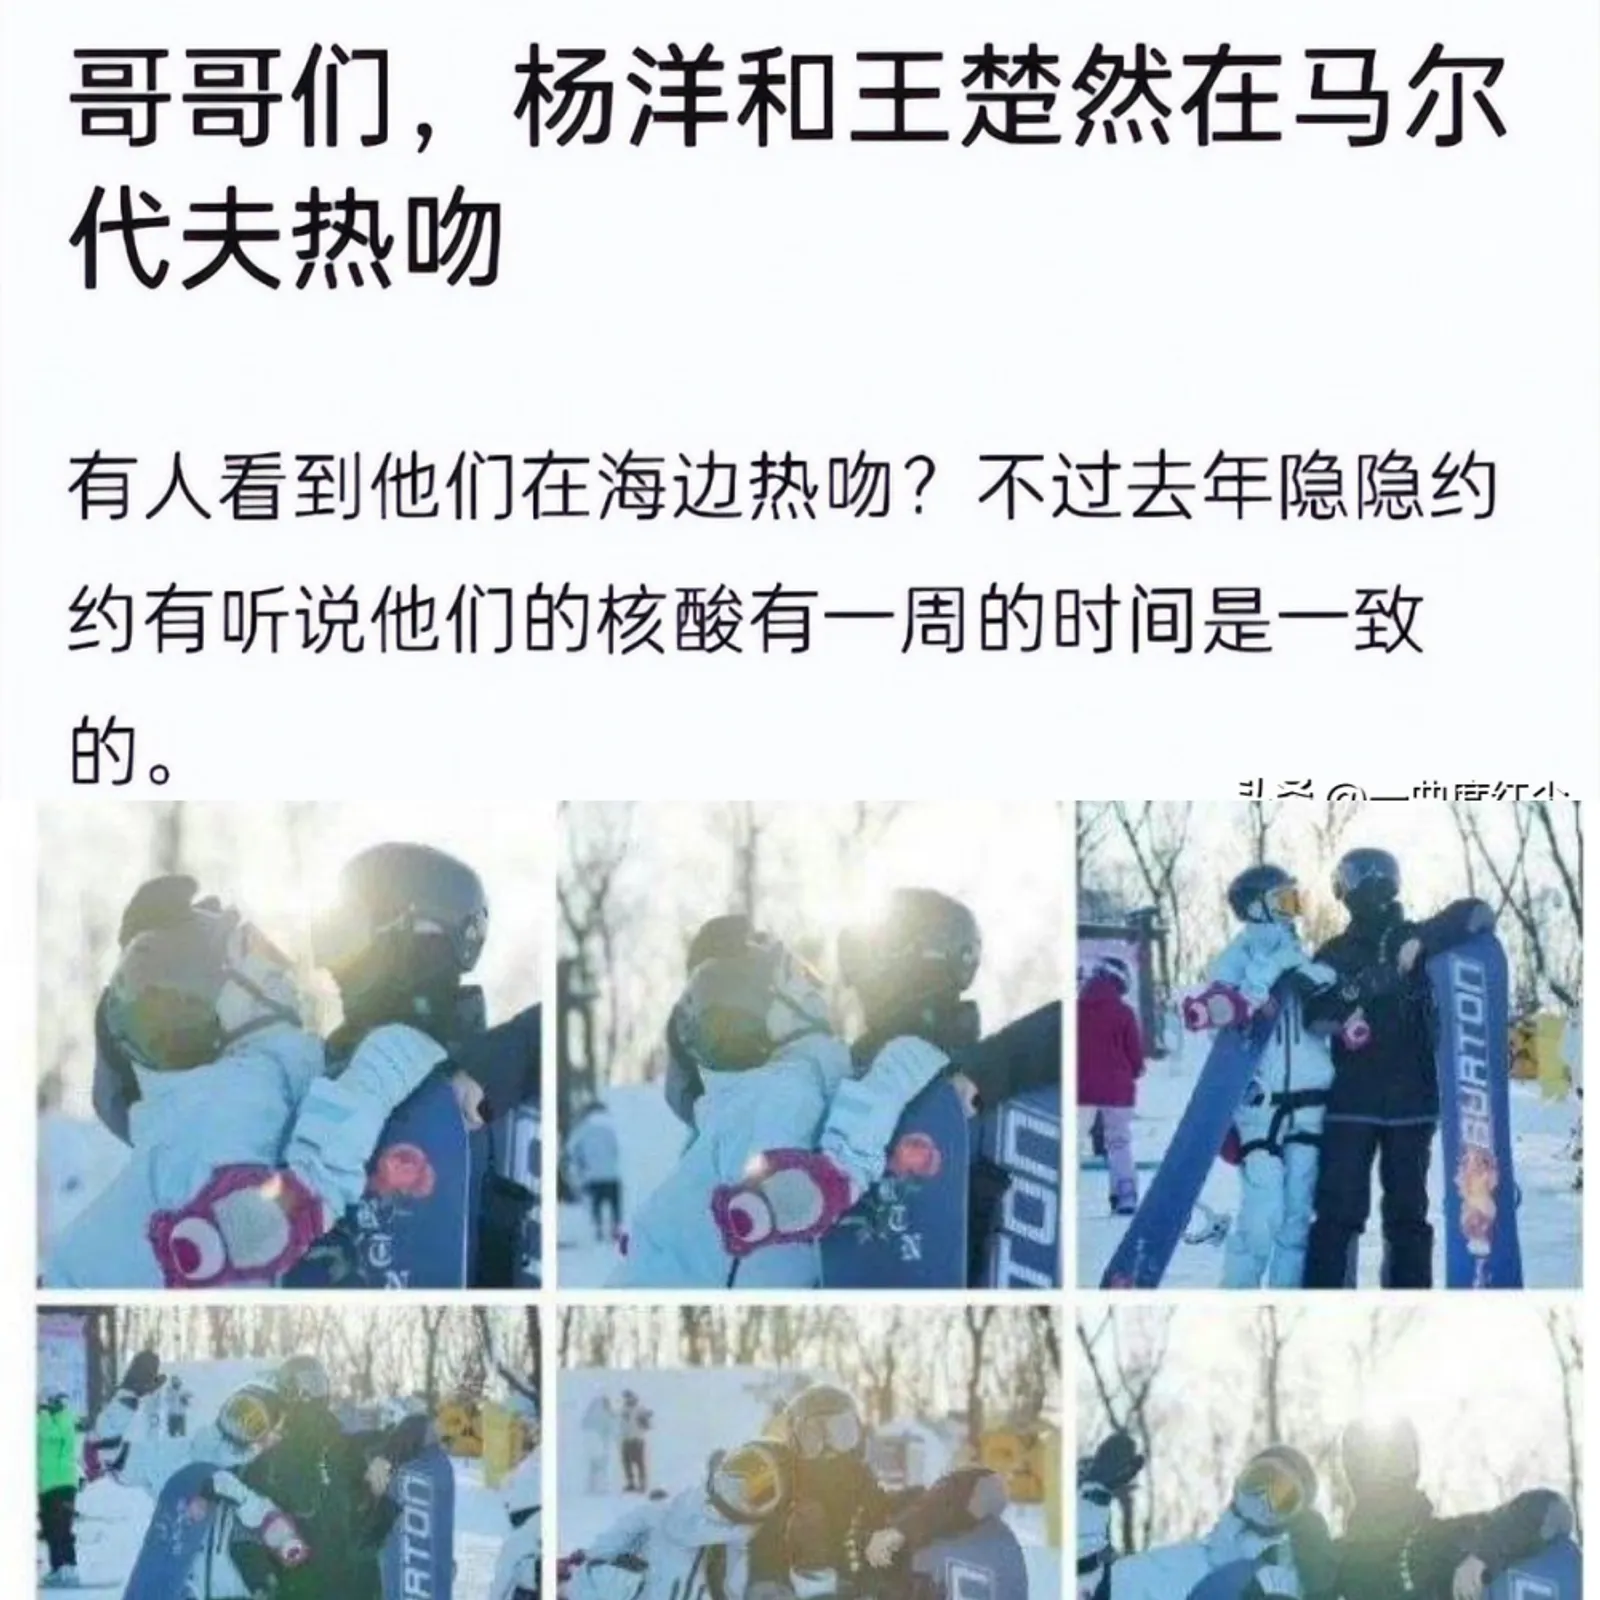 6 Kontroversi Wang Churan, Diduga Mengancam Sebar Foto Intim Yang Yang